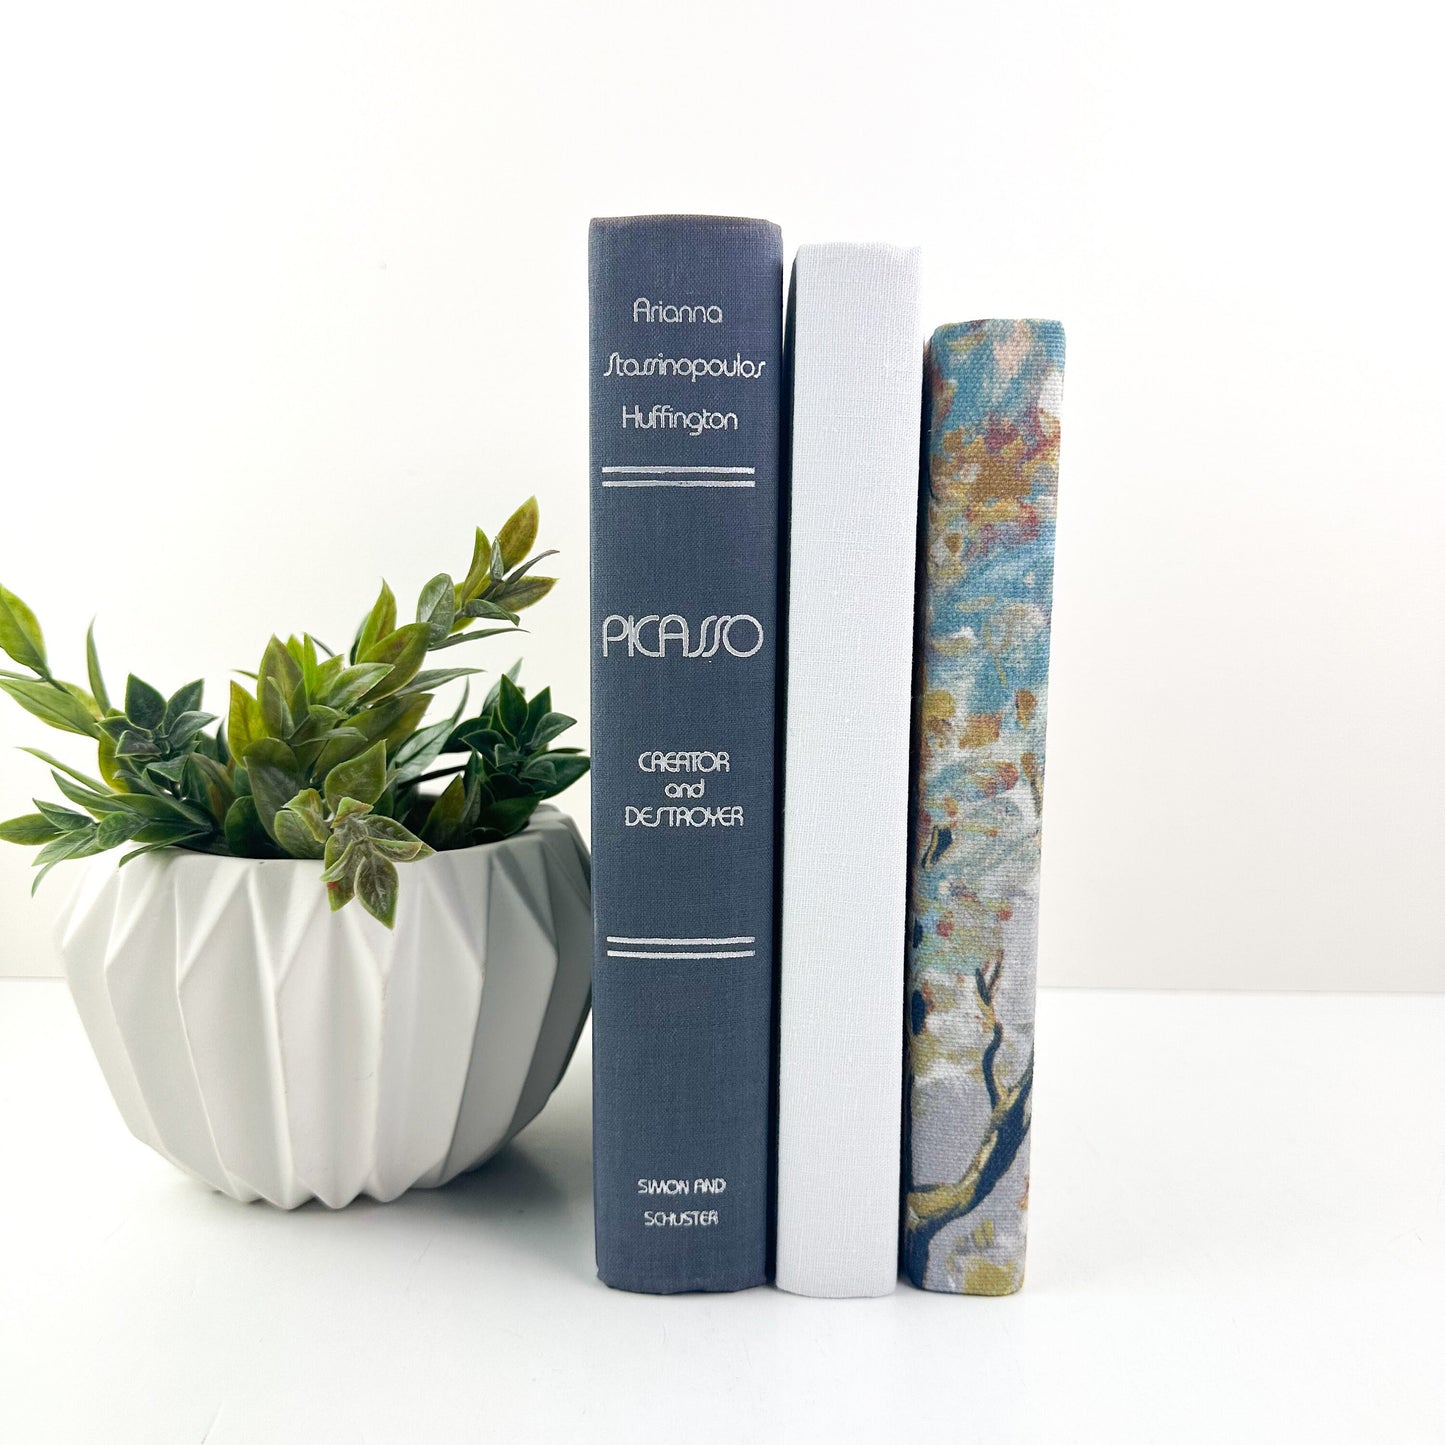 Picasso Decorative Books for Living Room Decor, Book Set for Shelf Decor, Book Bundle, Table Decor